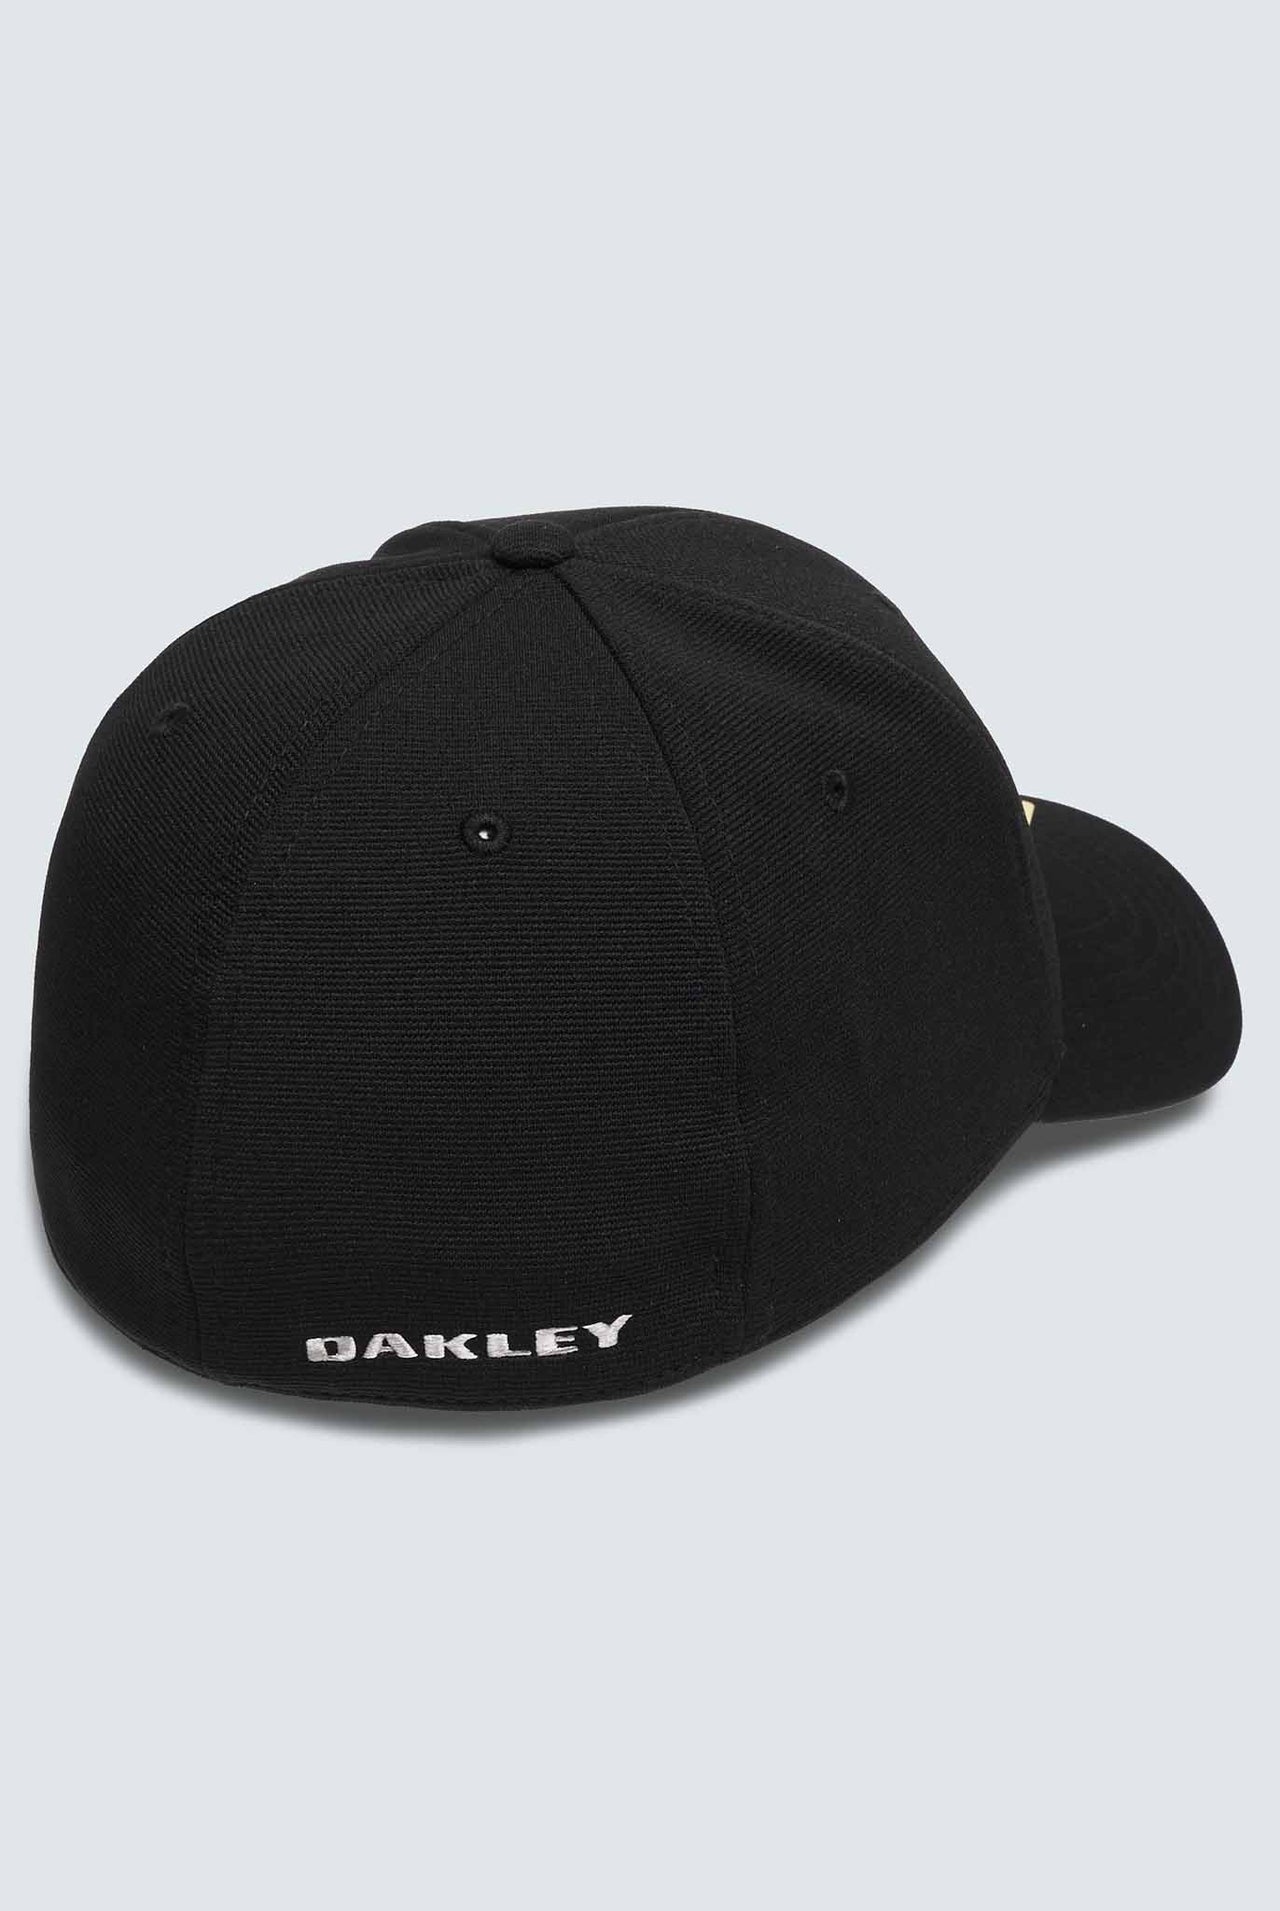 Gorra Oakley Blck/Grey